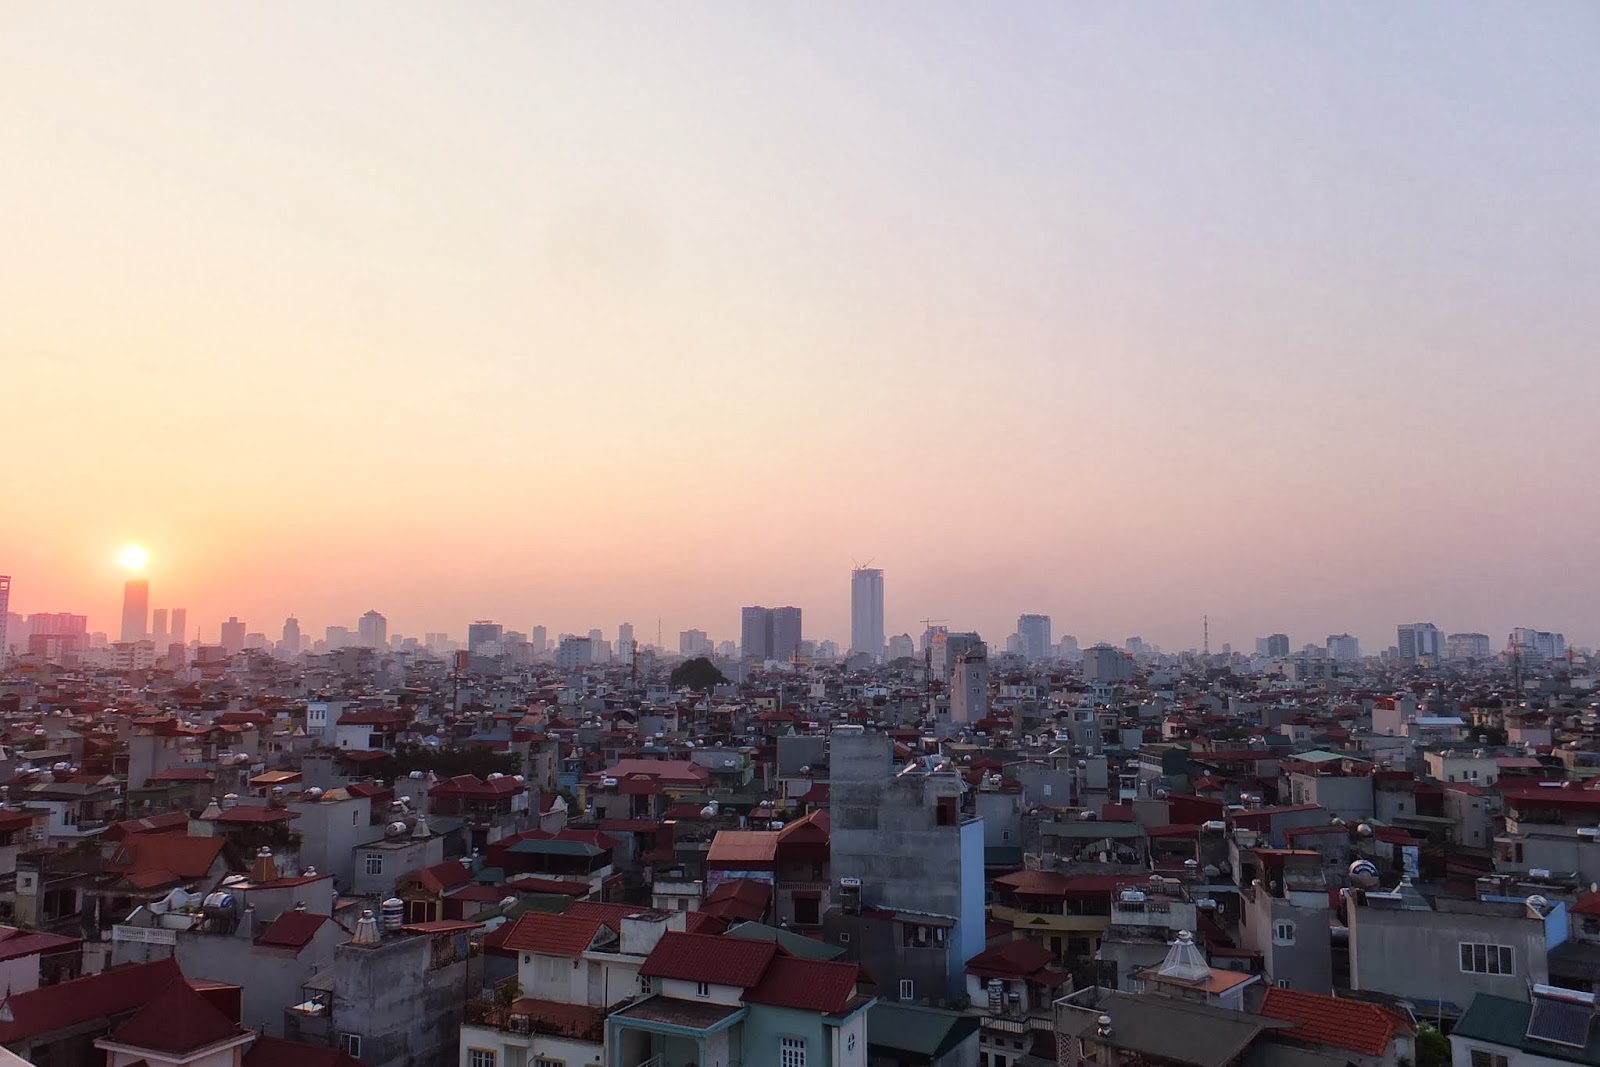 sunset-in-hanoi-vietnam ハノイの夕暮れ